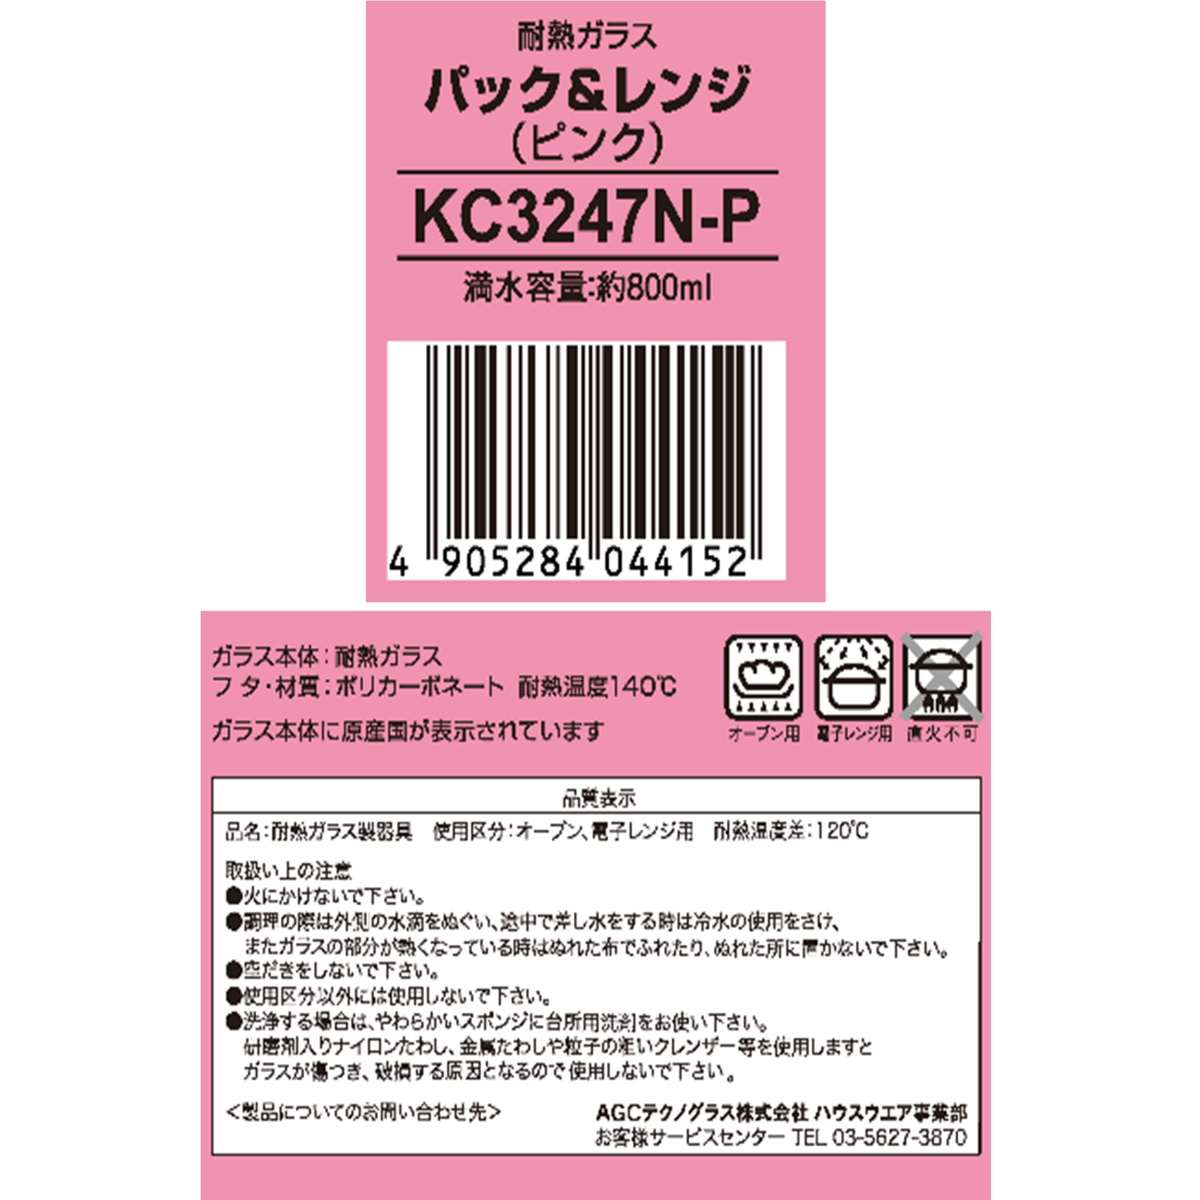 イワキ パック&レンジ 800ml 耐熱ガラス保存容器 ピンク